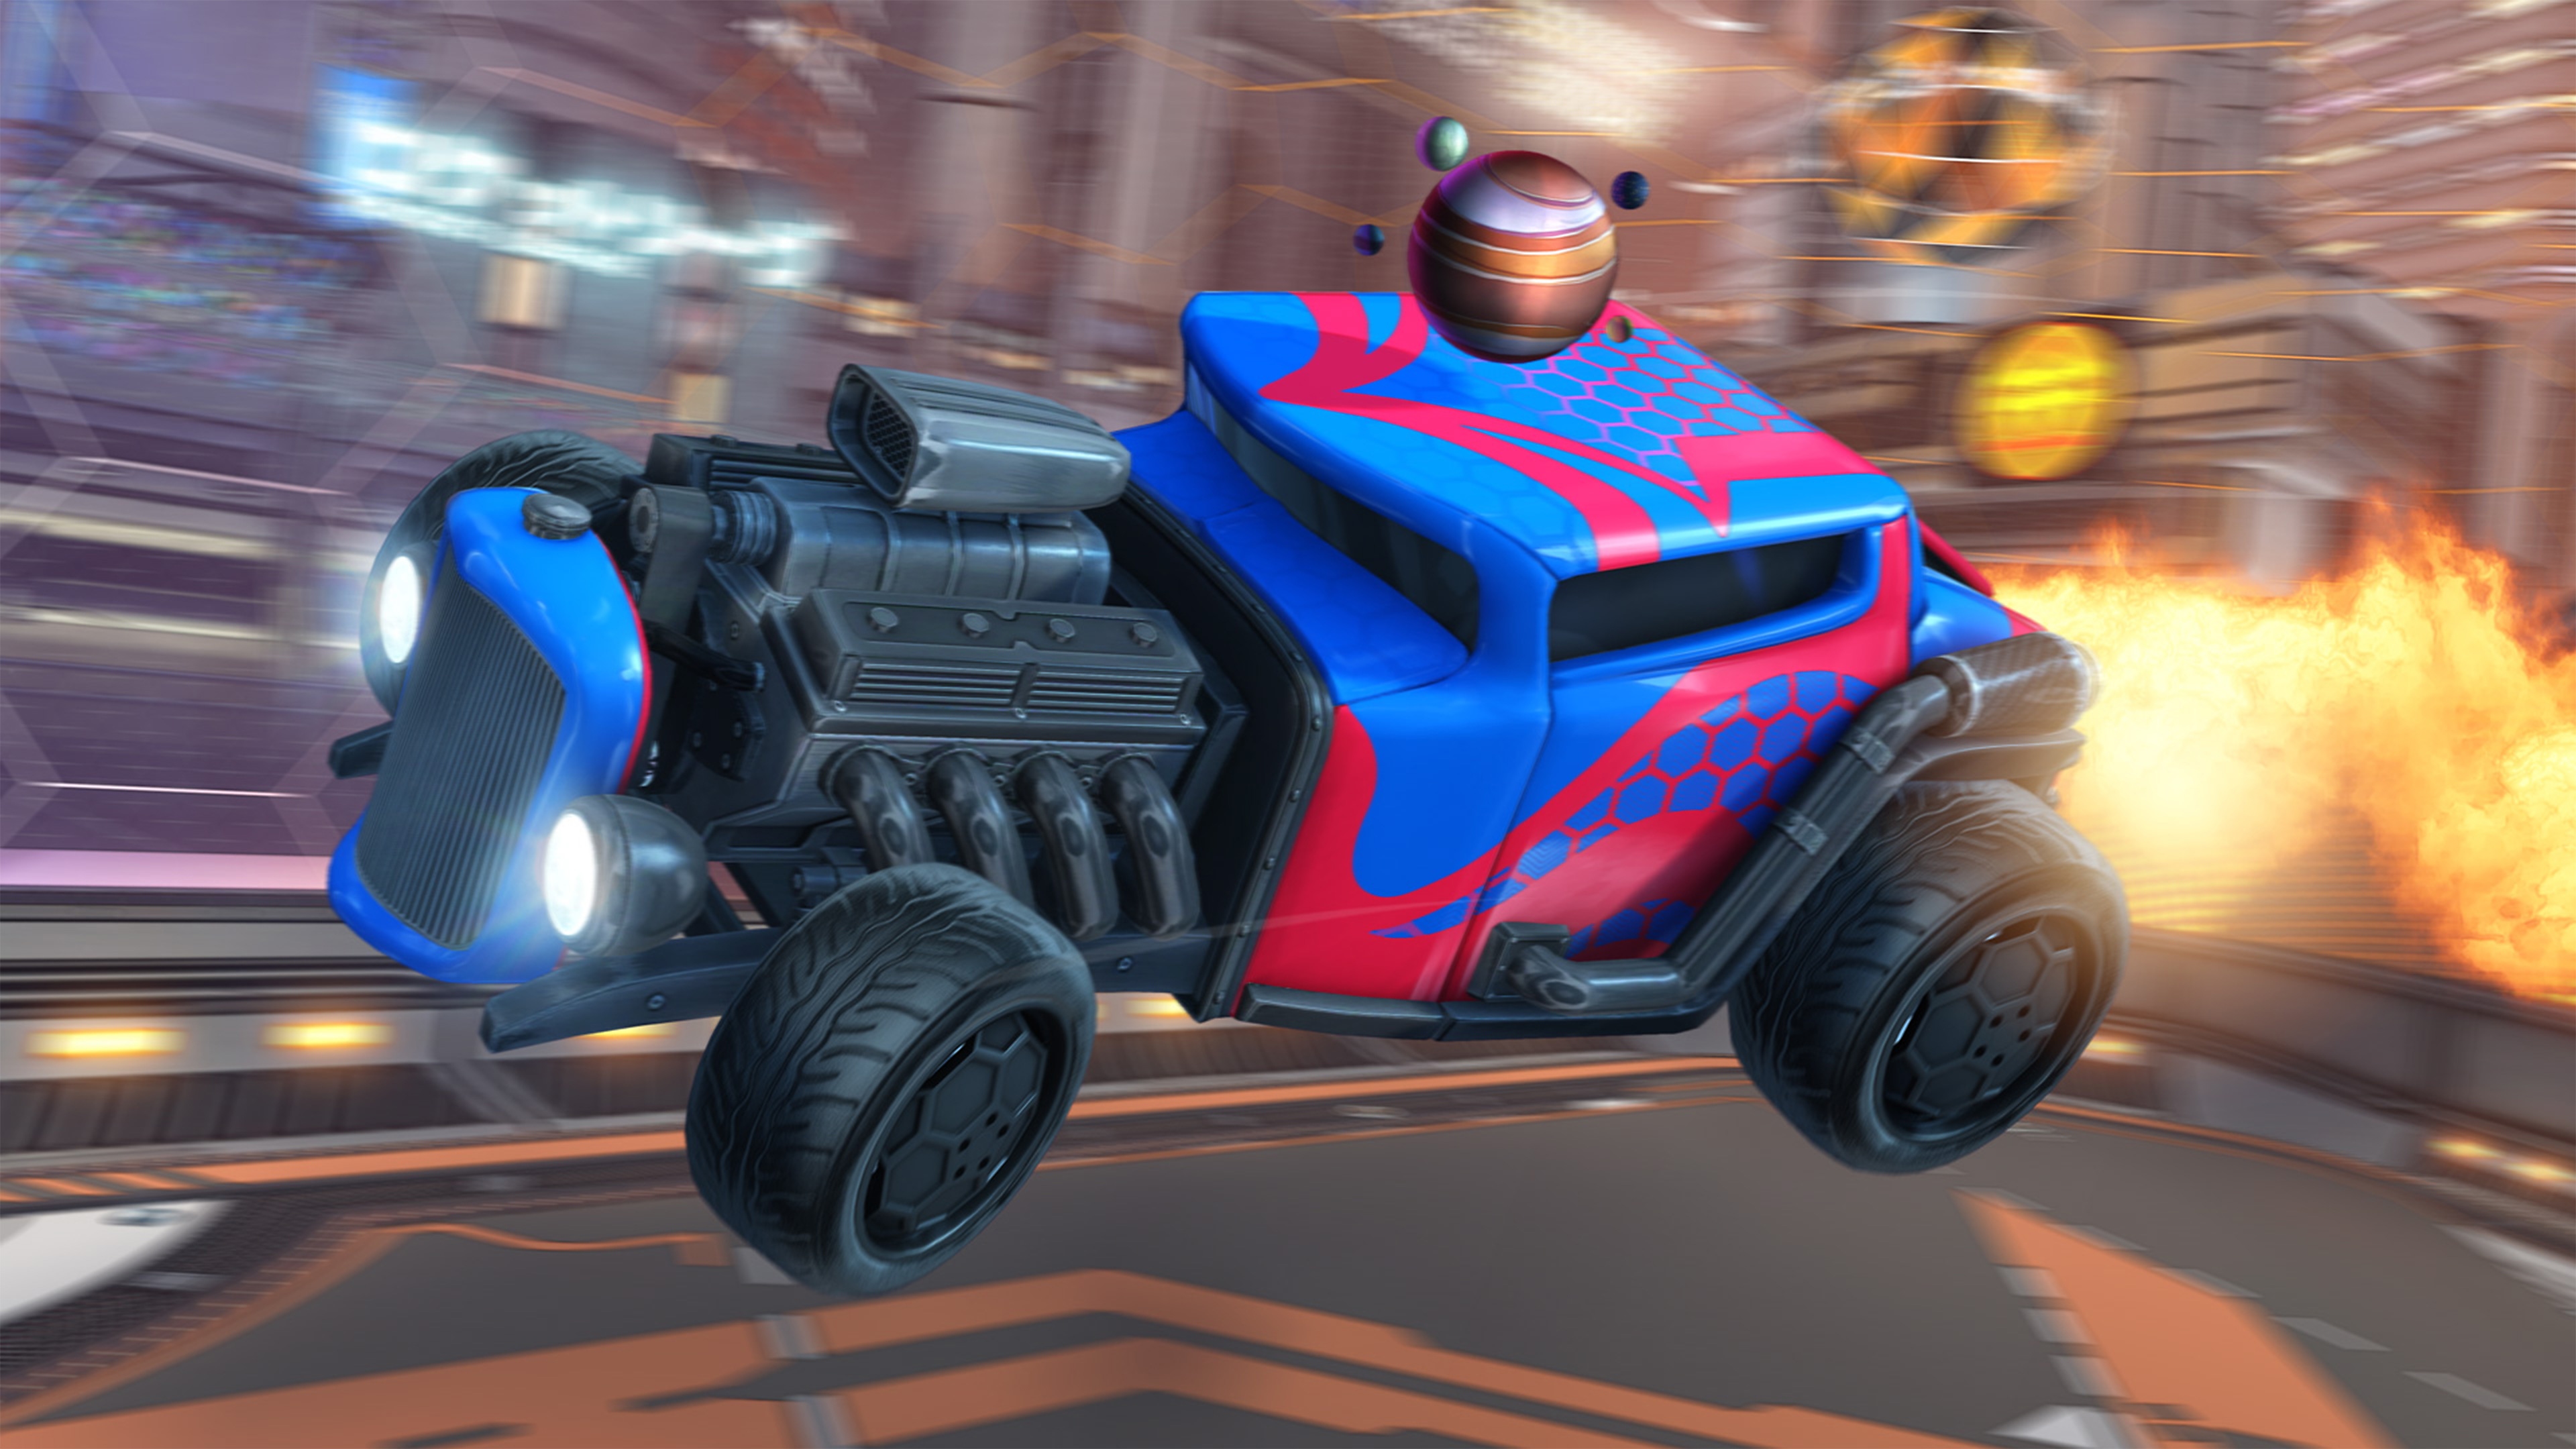 Rocket League – zrzut ekranu przedstawiający samochód w stylu hot roda, z odsłoniętym silnikiem i czerwono-niebieskim lakierem